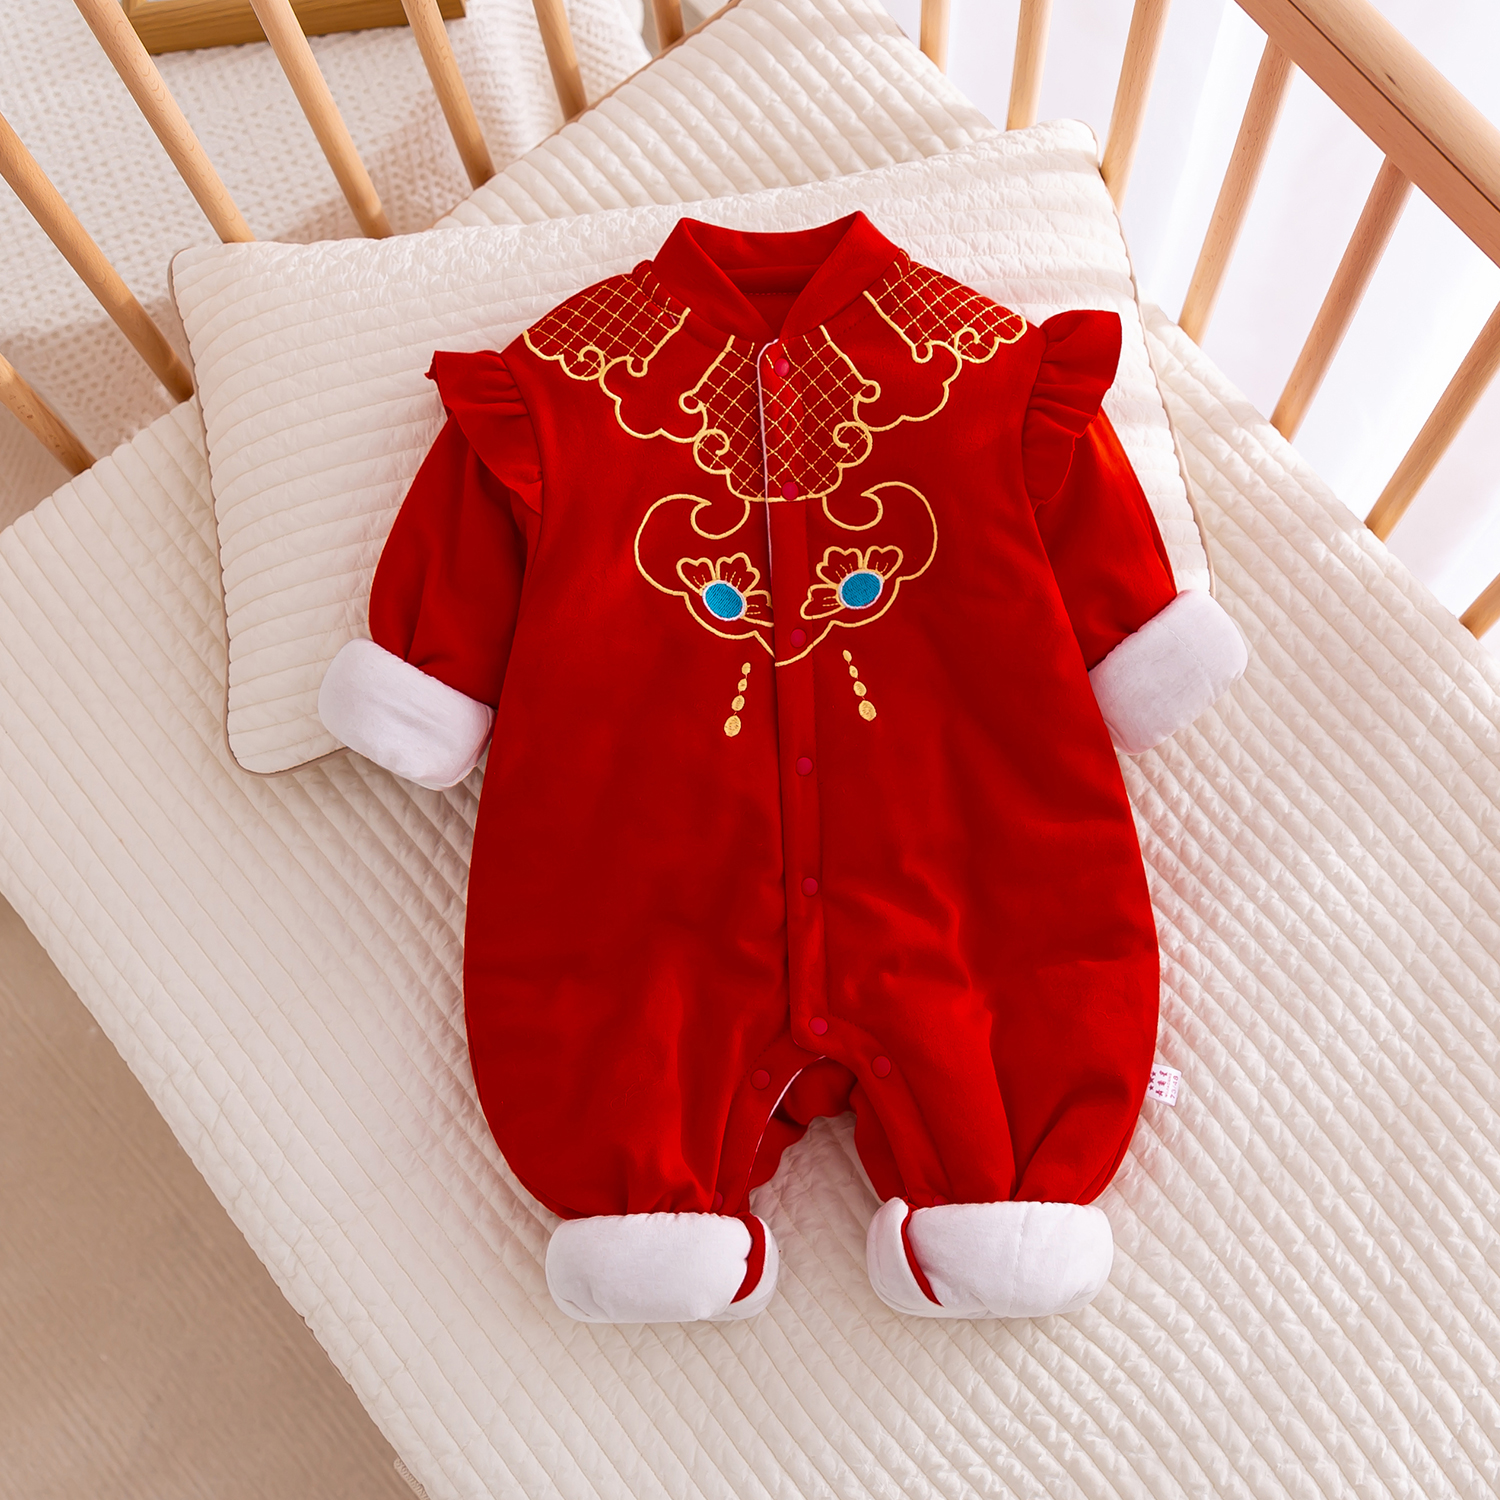 婴儿拜年服秋冬新款连体衣女宝宝夹棉新年装过年喜庆大红色中国风